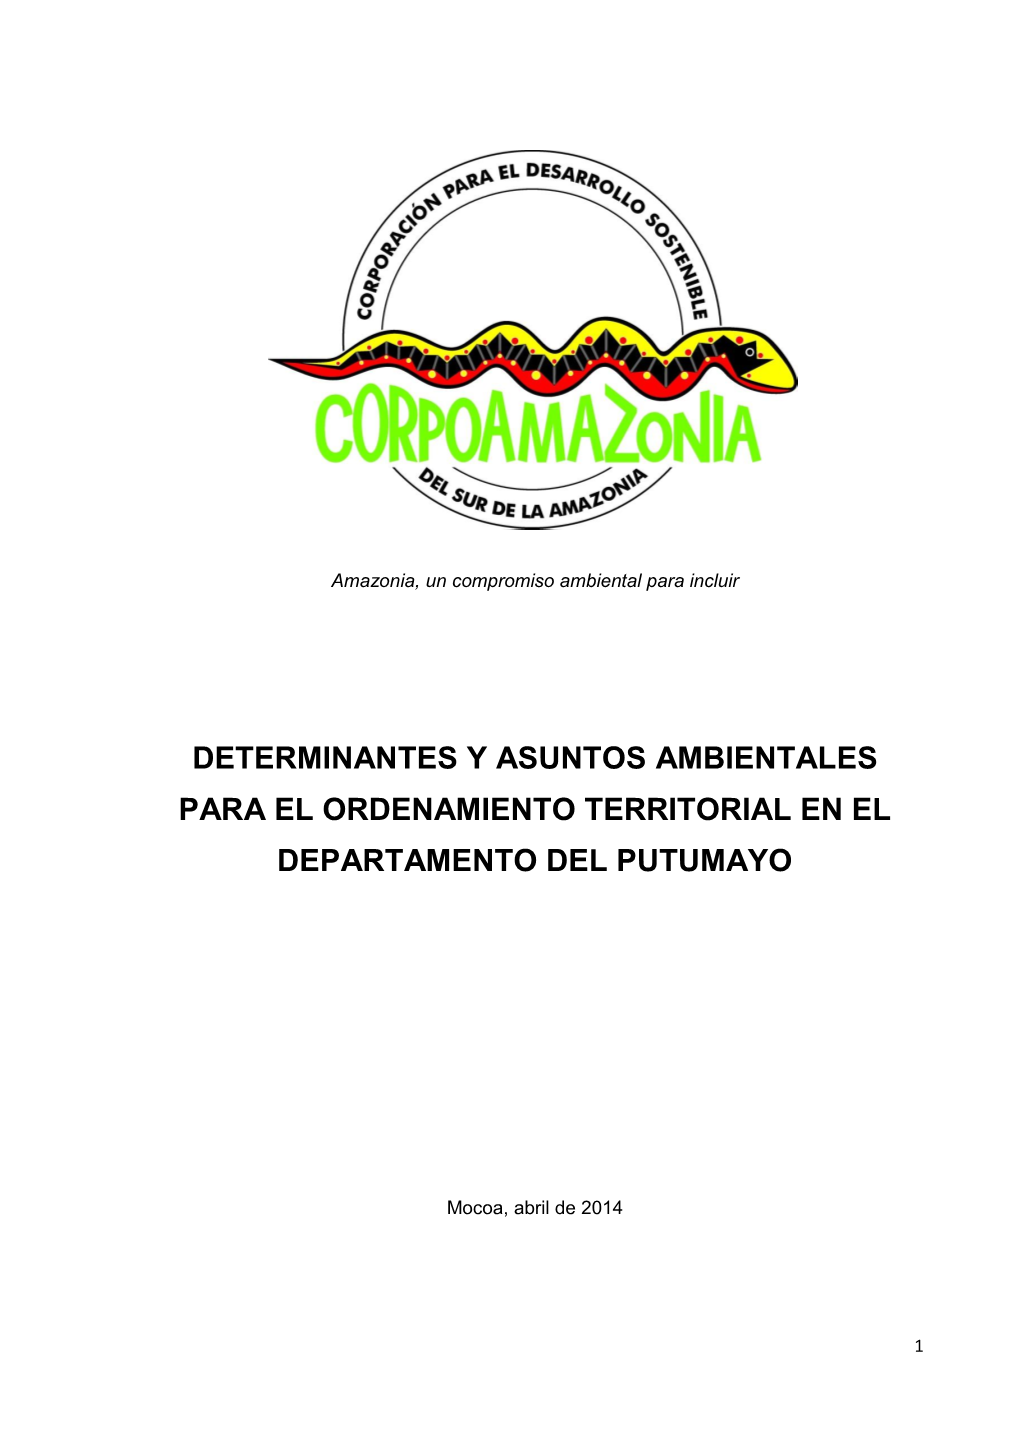 Determinantes Y Asuntos Ambientales Para El Ordenamiento Territorial En El Departamento Del Putumayo